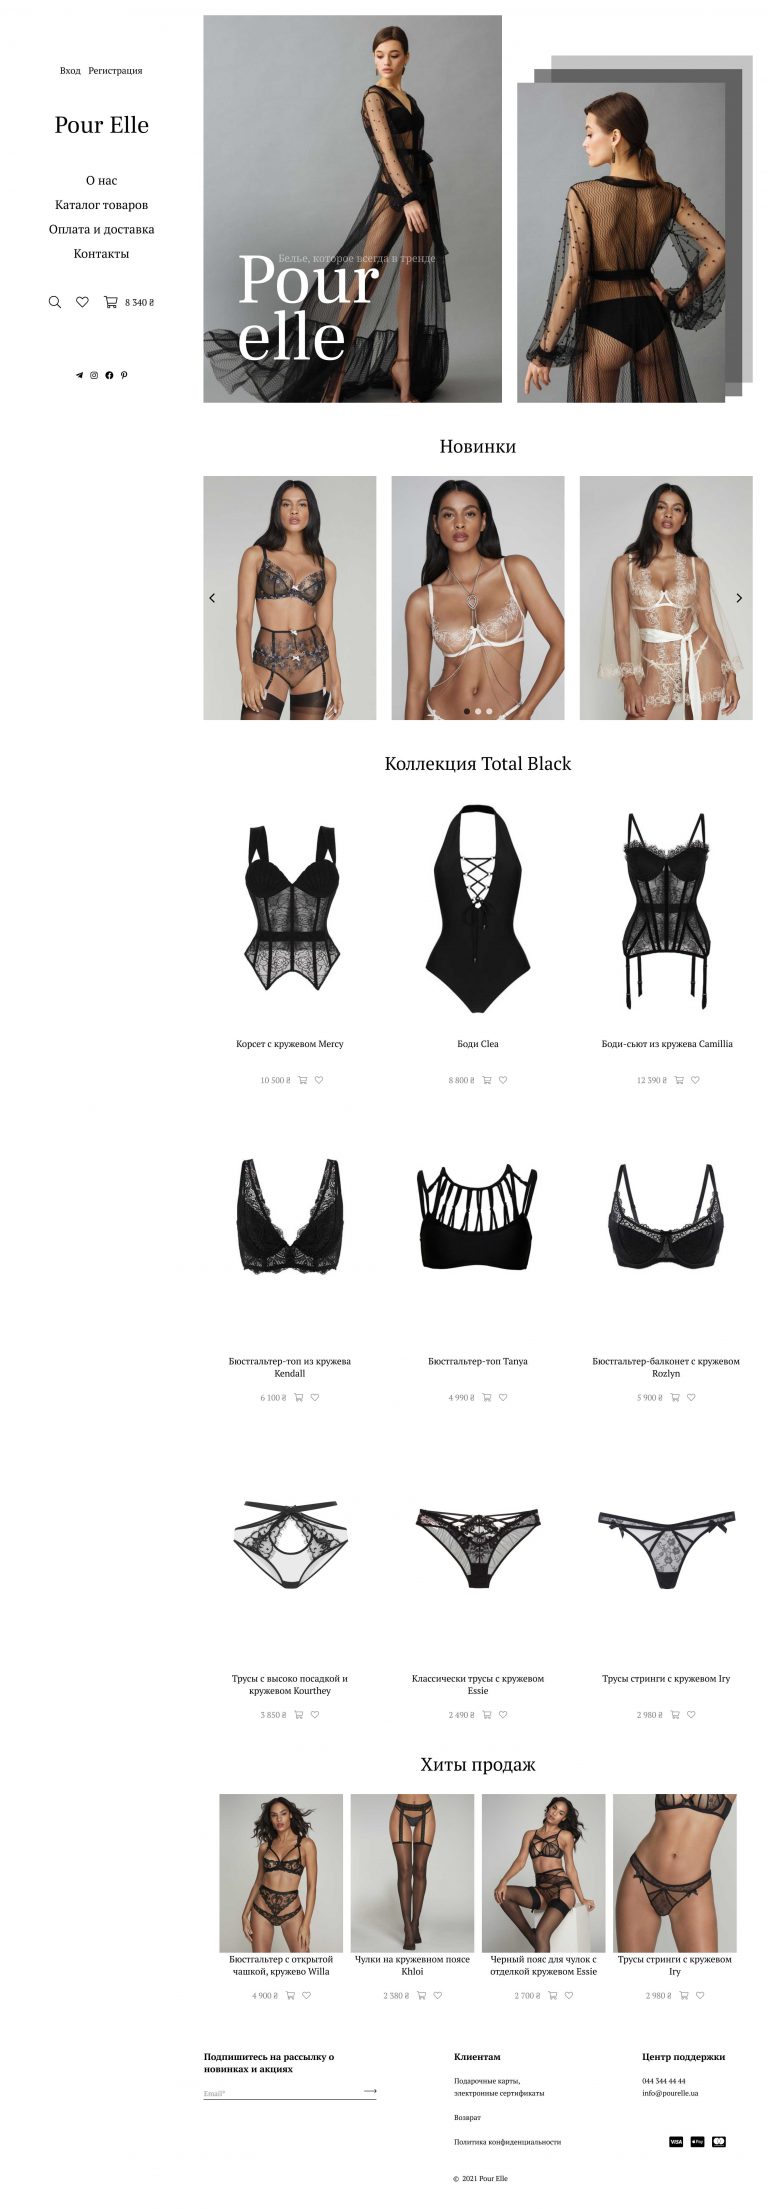 Online store of lingerie "Pour Elle"